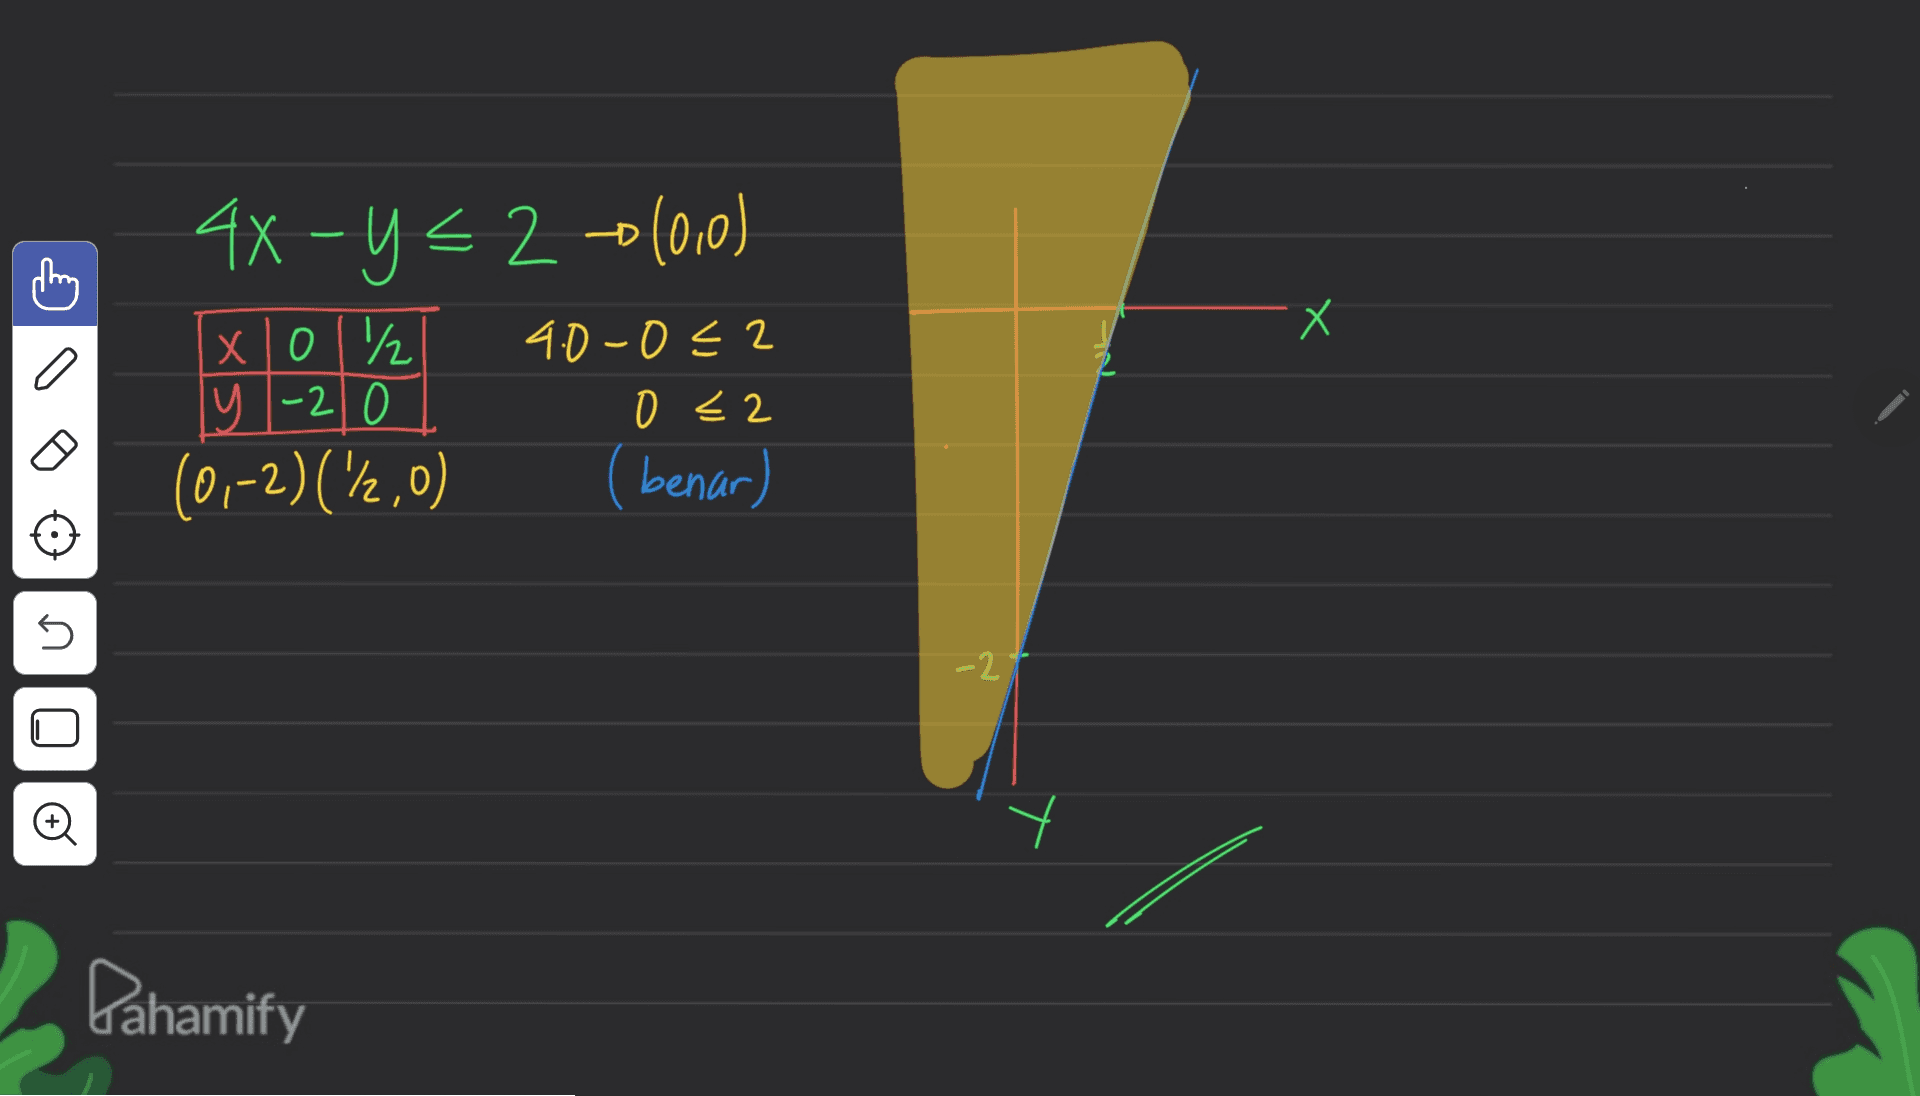 X 44-y= 20(0,0) xlo1/ 4.0-0 € 2 y 1-2 0 y -20 0 <2 (0,-2)(\2,0) (benar) U -2 o Pahamify 